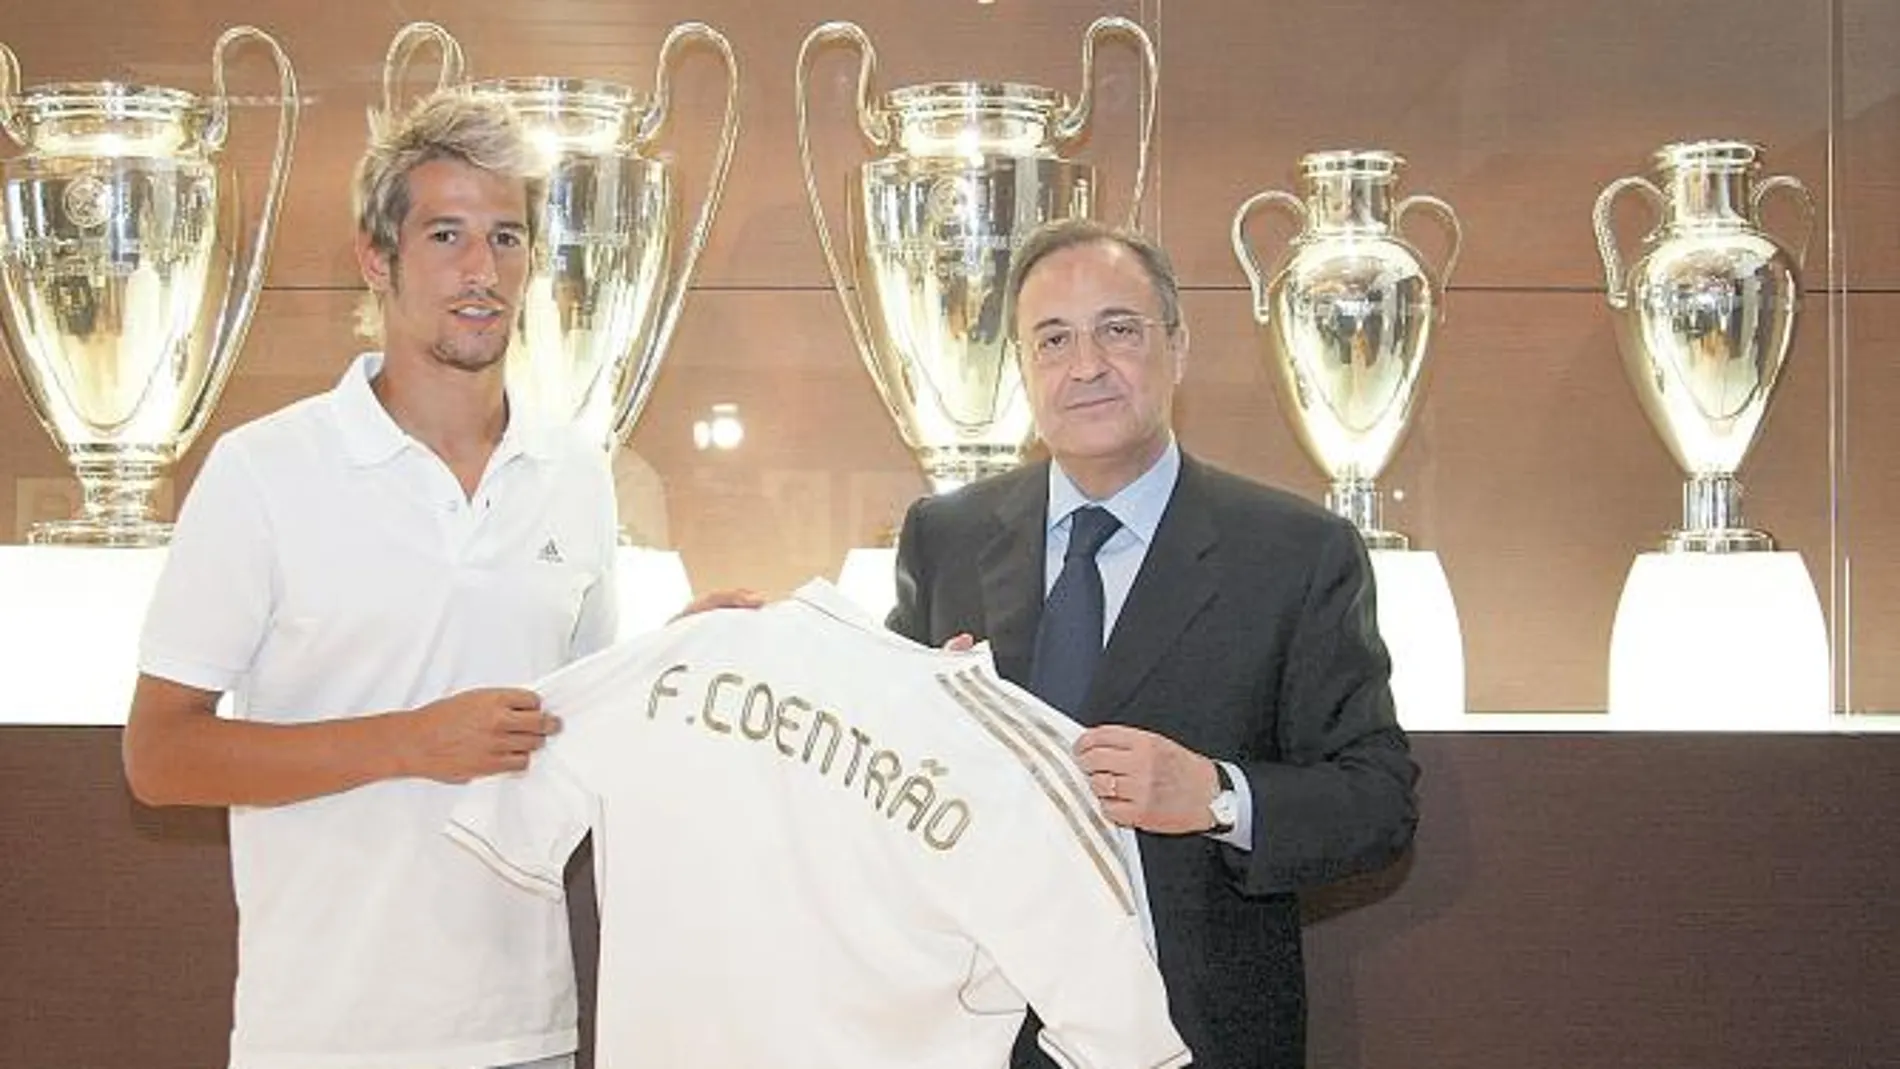 Coentrao enseña su nueva camiseta al lado de Florentino Pérez, en la sala de trofeos del Santiago Bernabéu